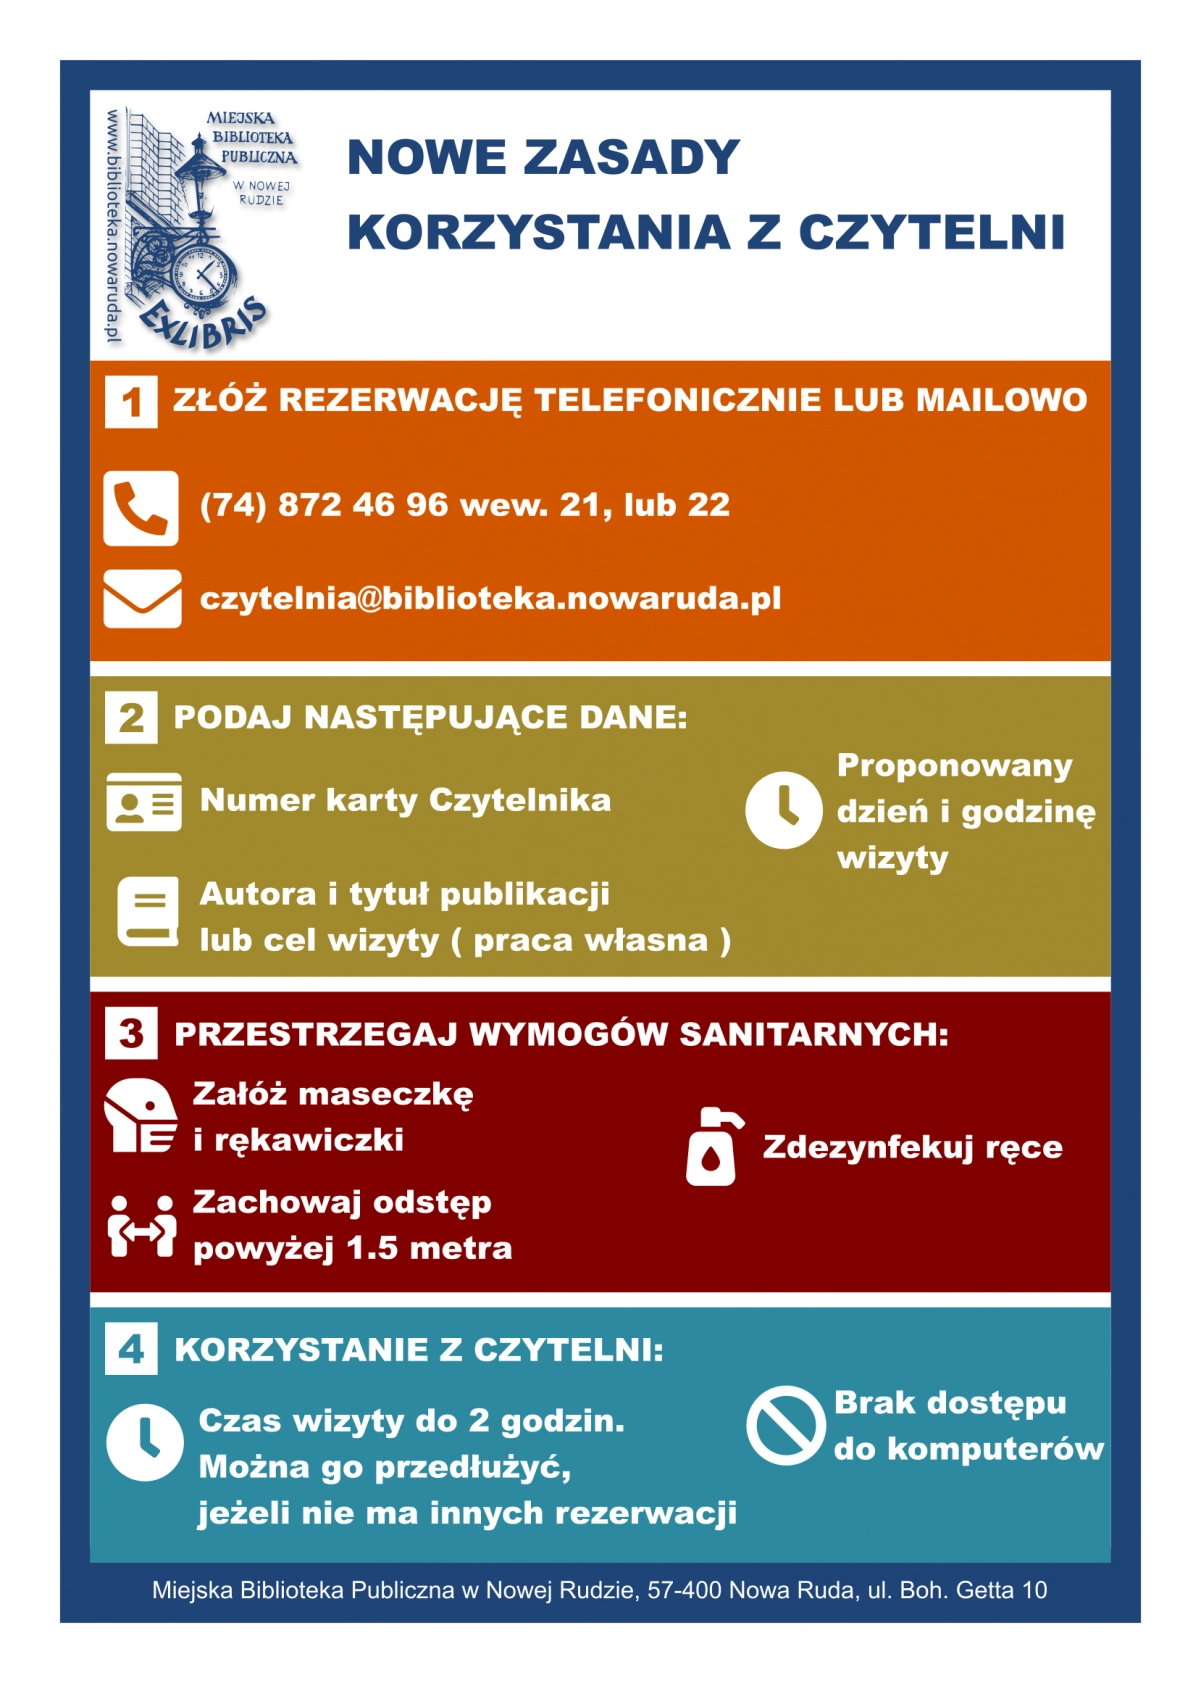 Infografika prezentująca zasady korzystania z czytelni w okresie pandemii COVID-19